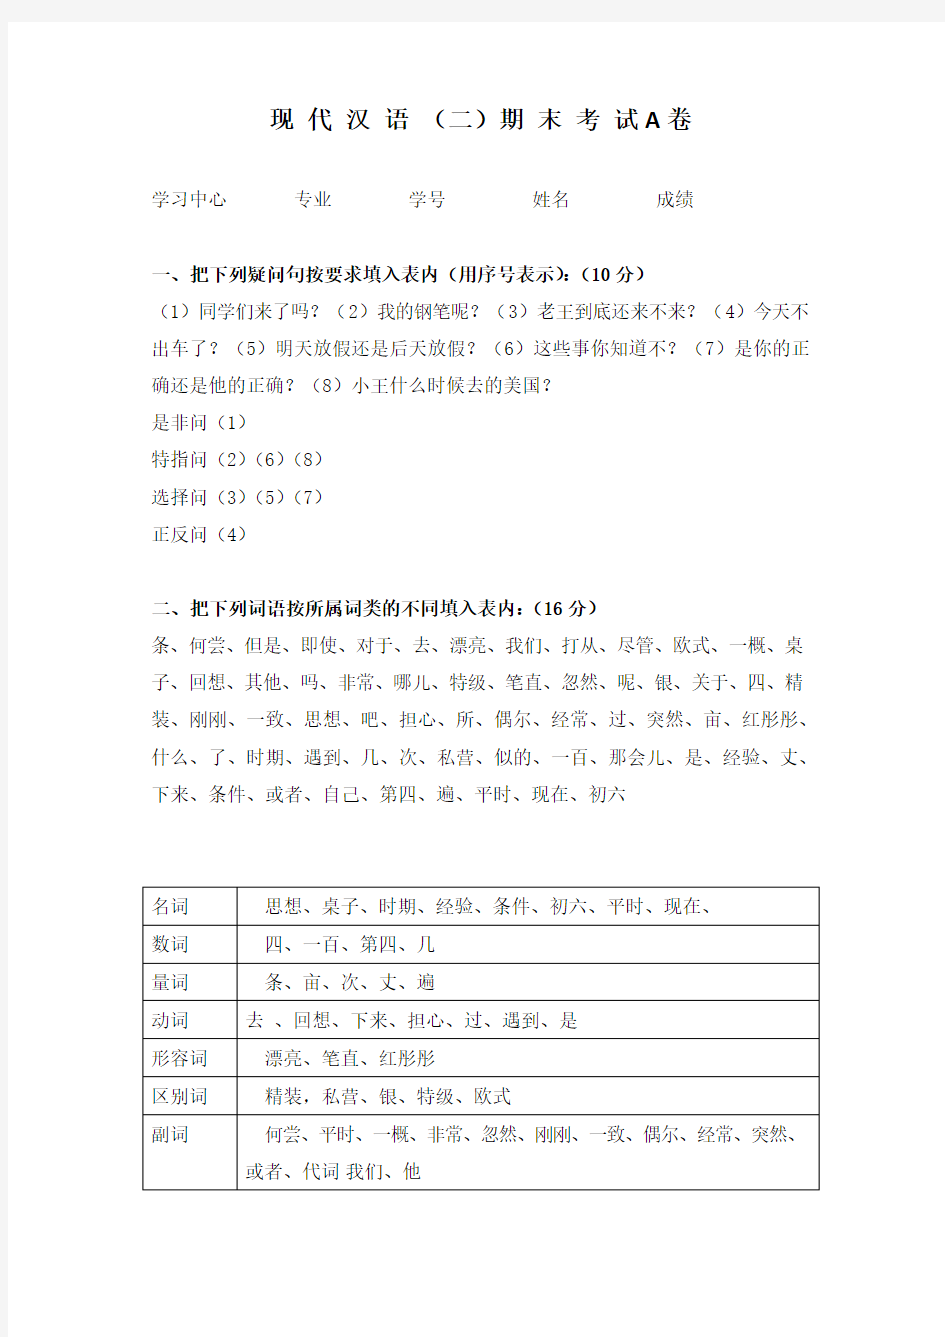 福建师范大学19年8月课程考试《现代汉语(二) 》作业考核试题 答案